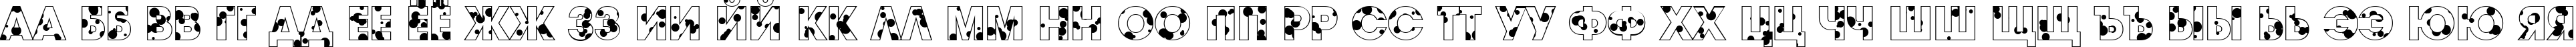 Пример написания русского алфавита шрифтом a_AvanteDrp